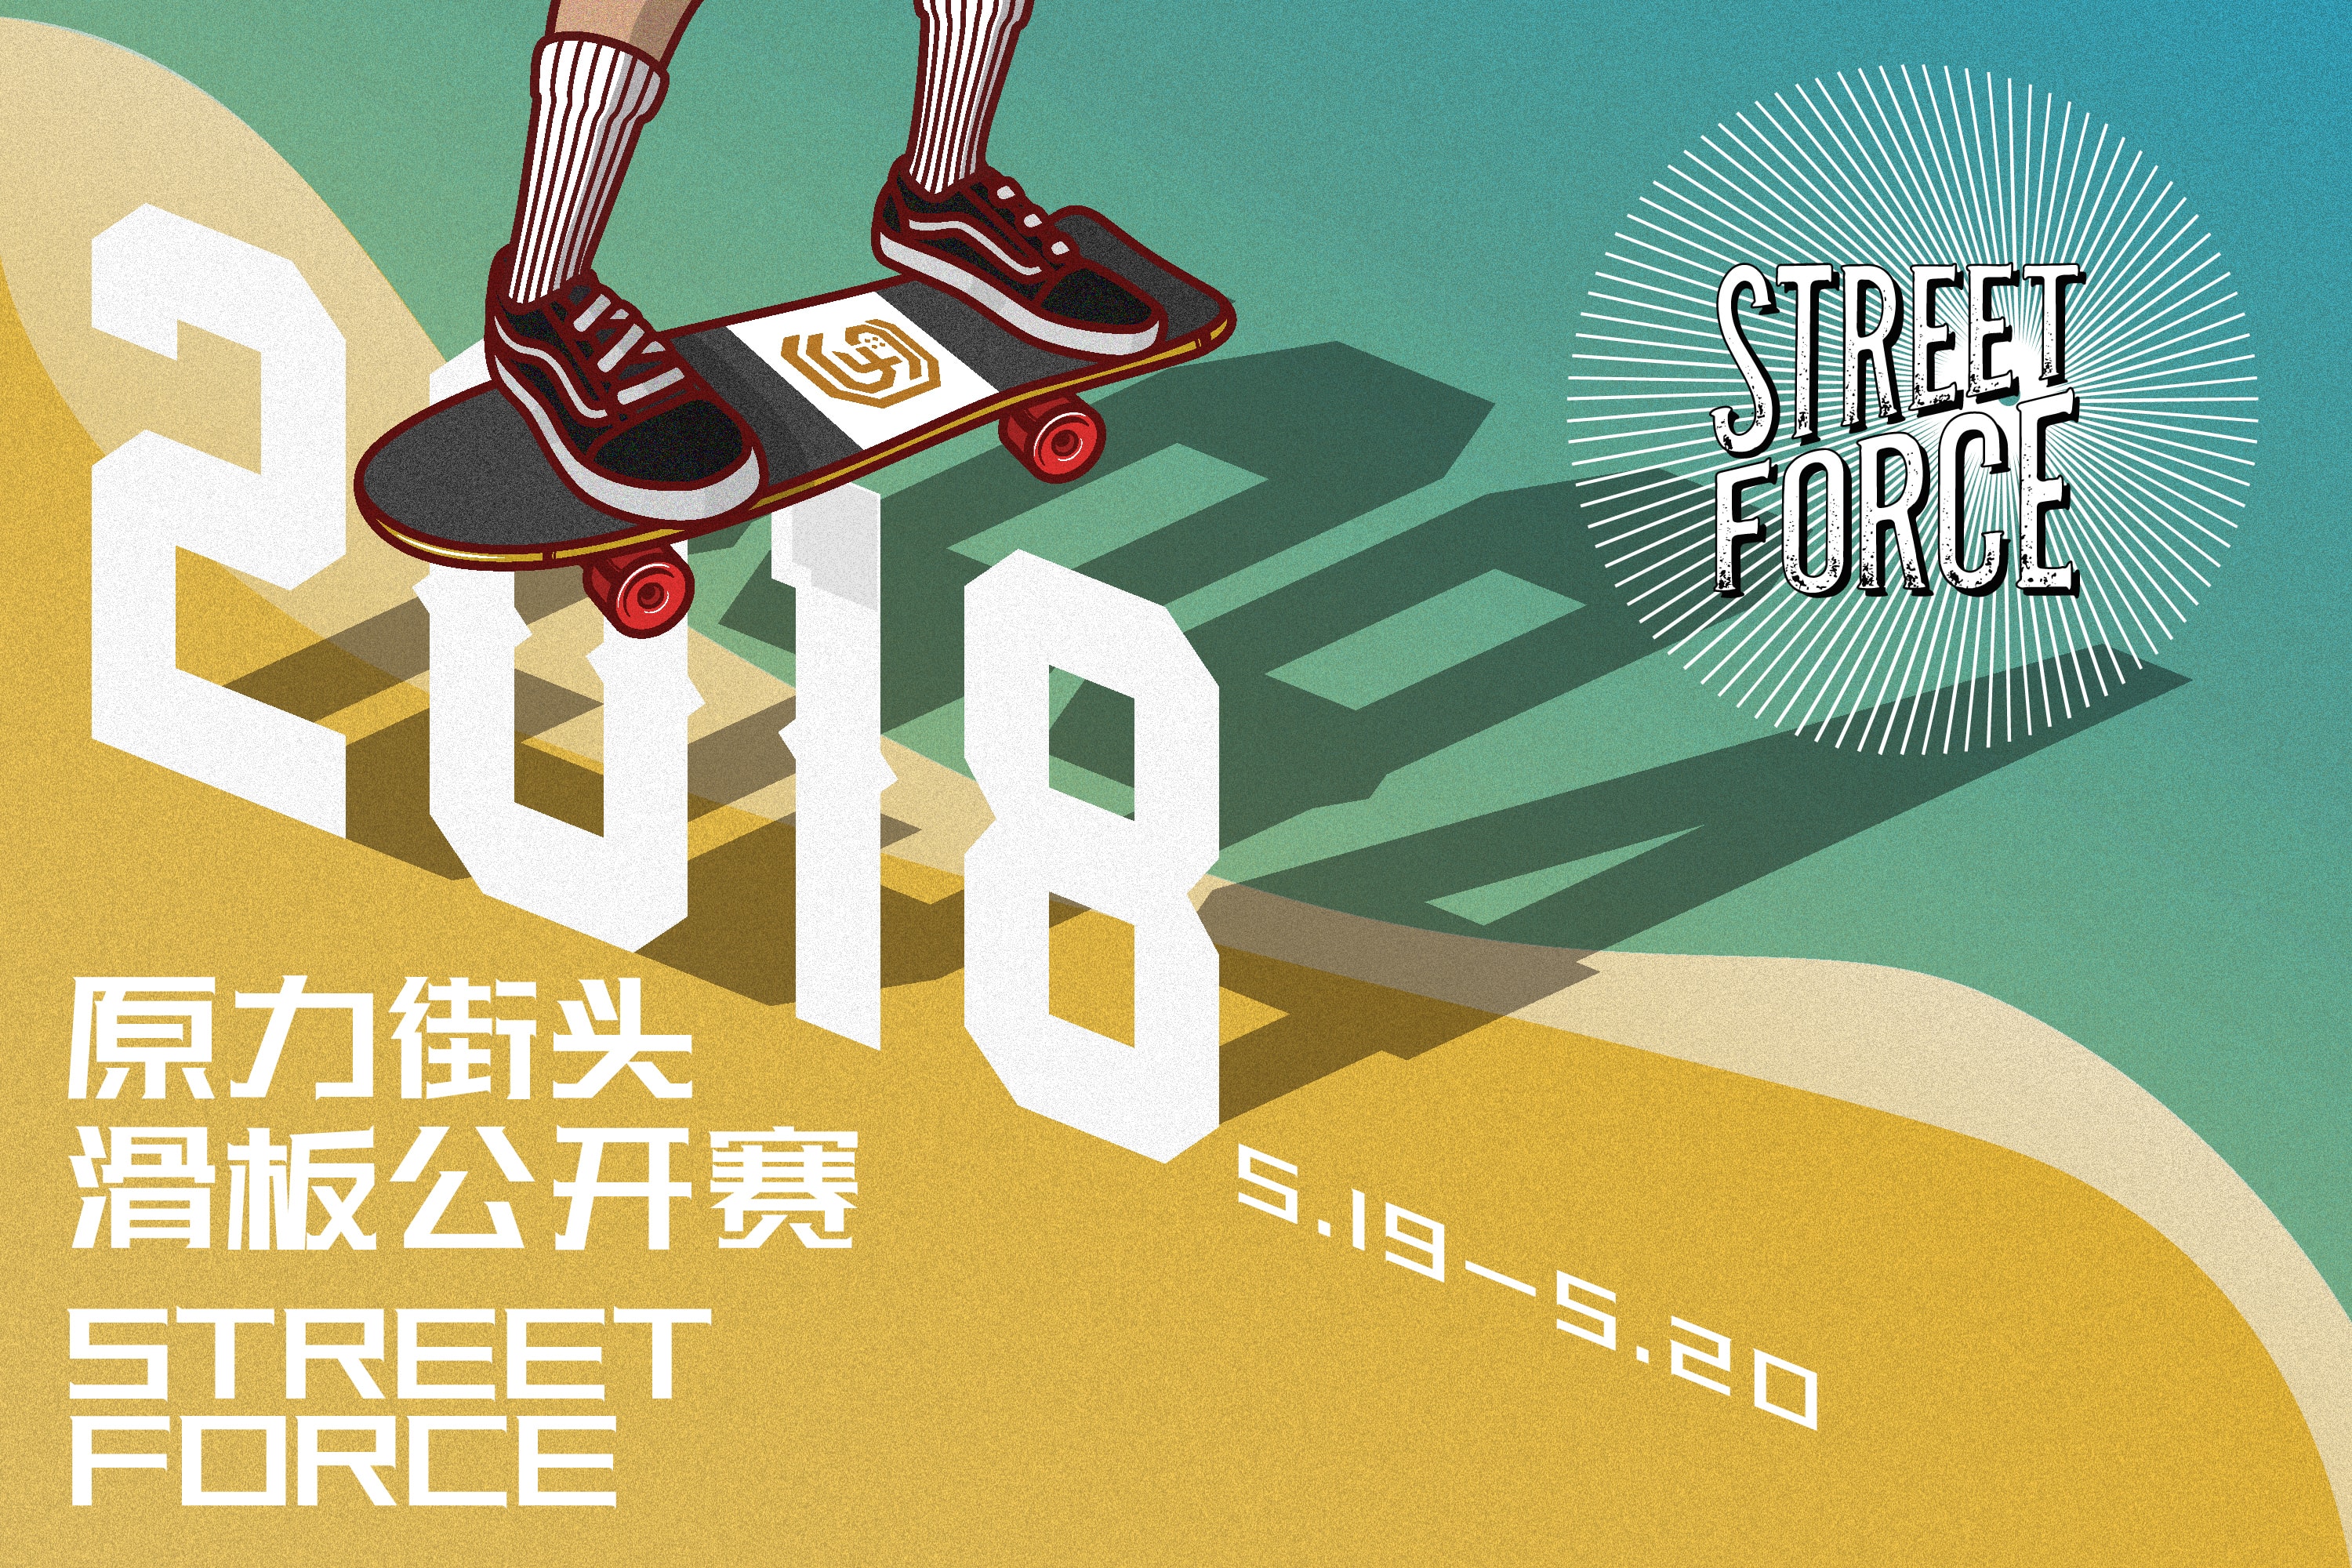 STREET FORCE「原力街头」滑板系列赛将登陆中国